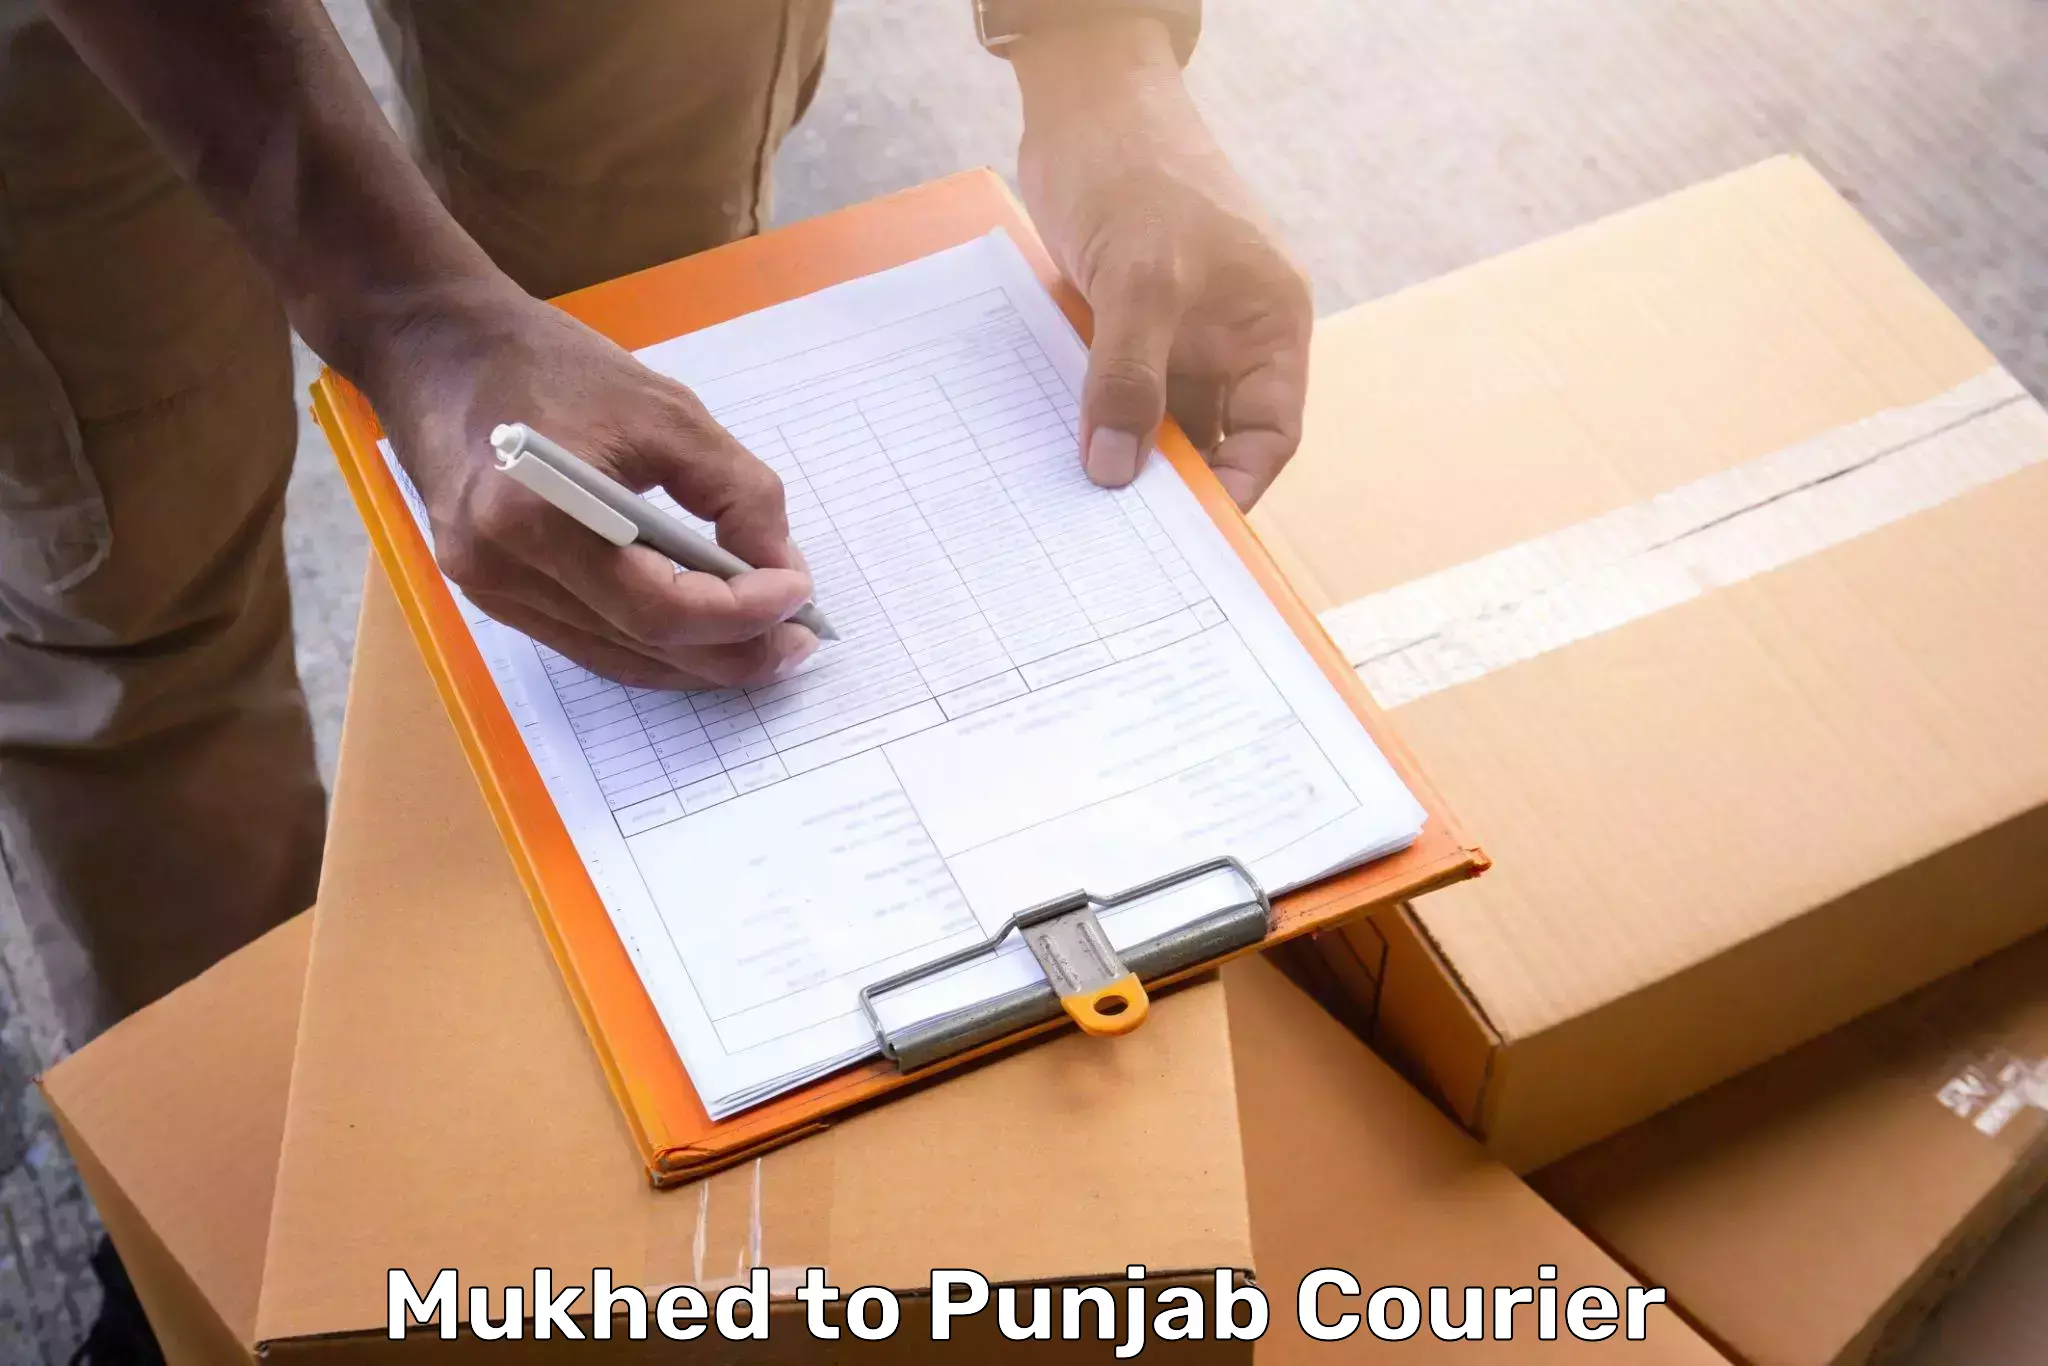 Baggage transport scheduler Mukhed to Punjab